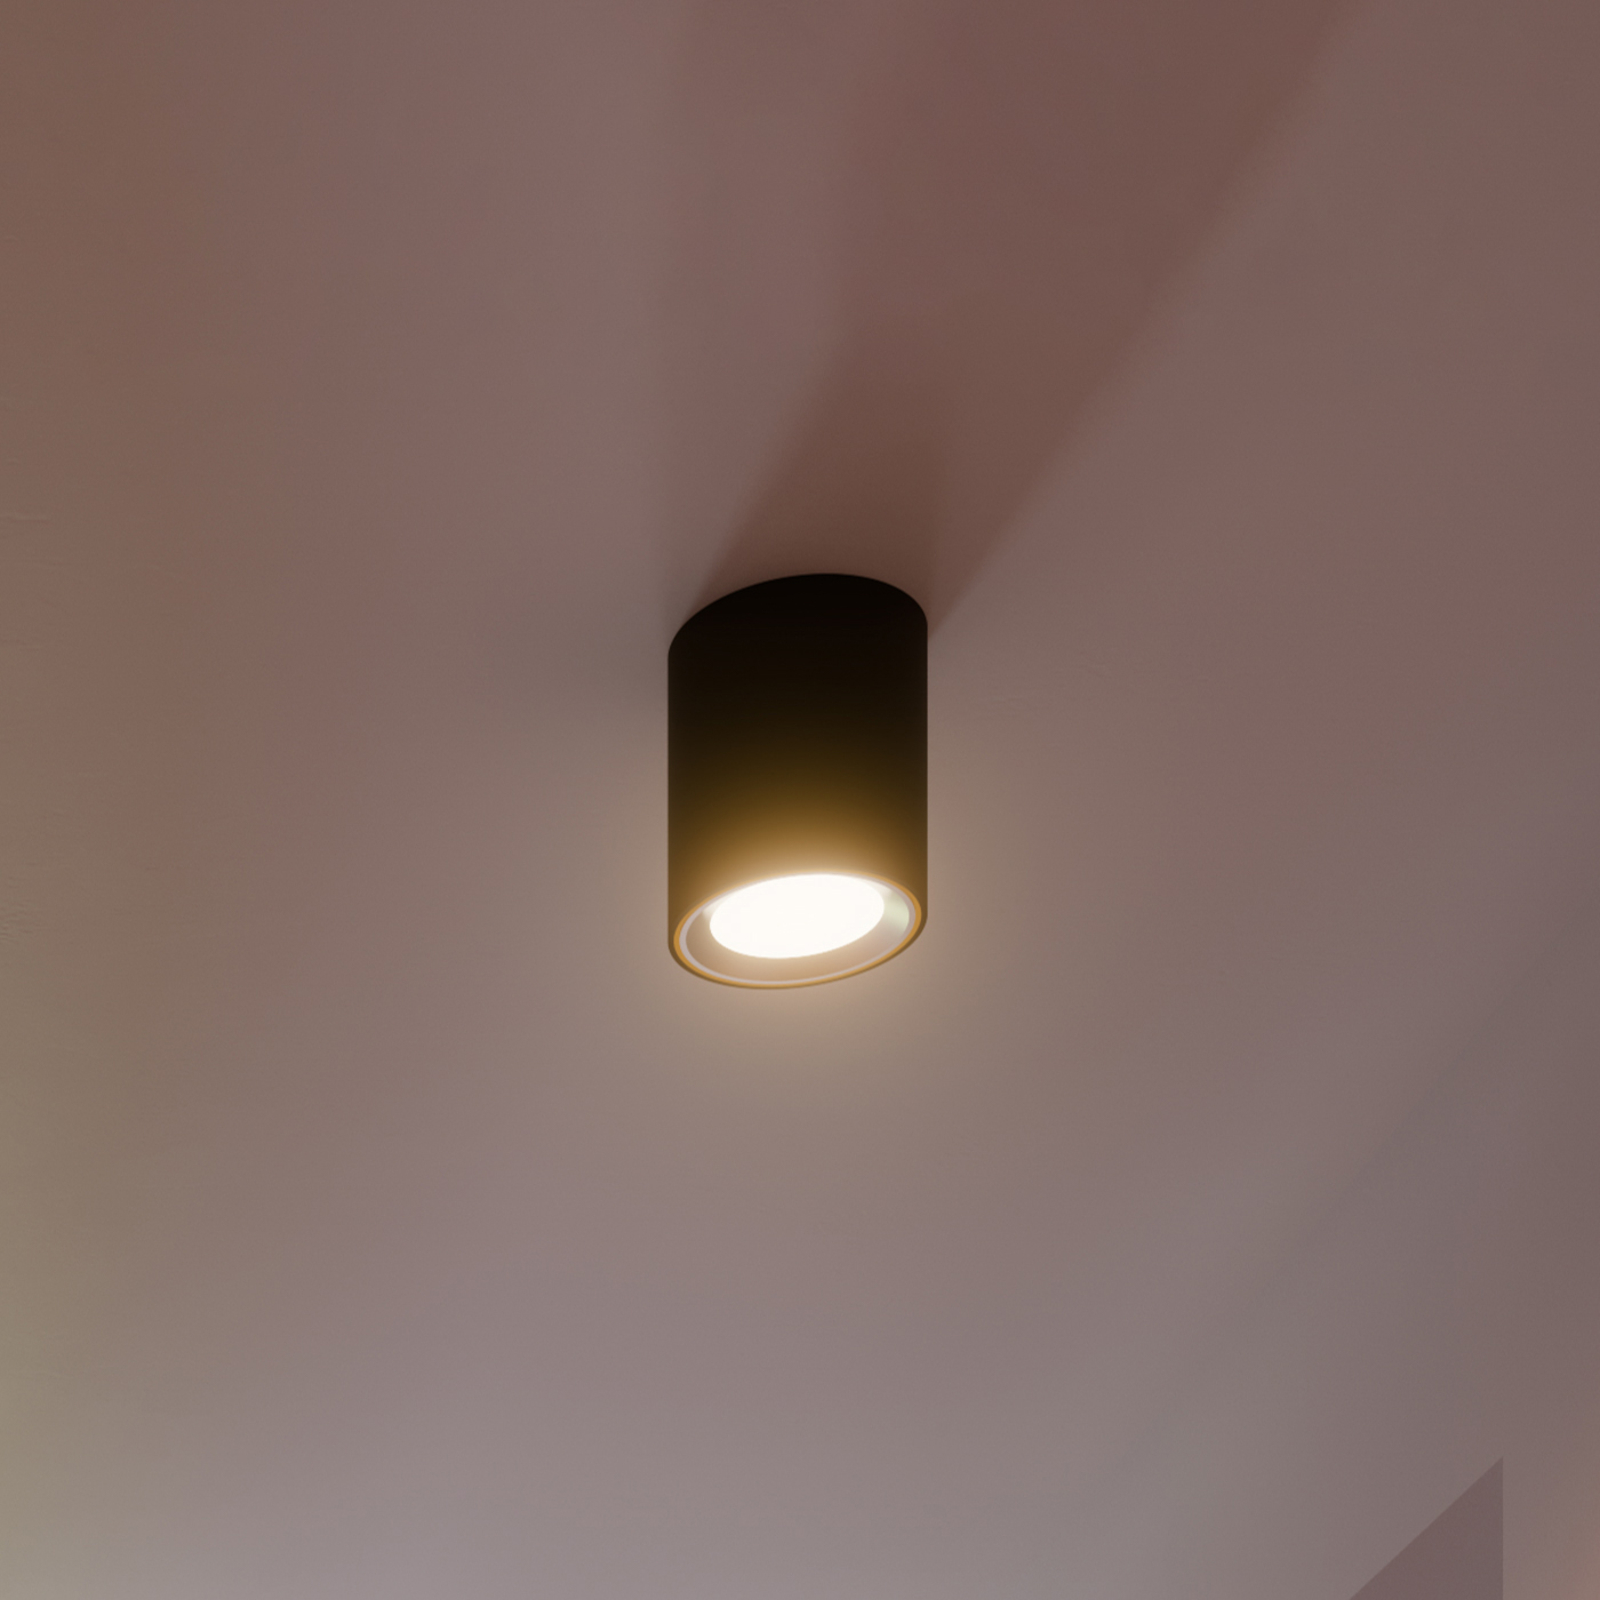 Stropní bod LED Landon Smart, černý, výška 14 cm